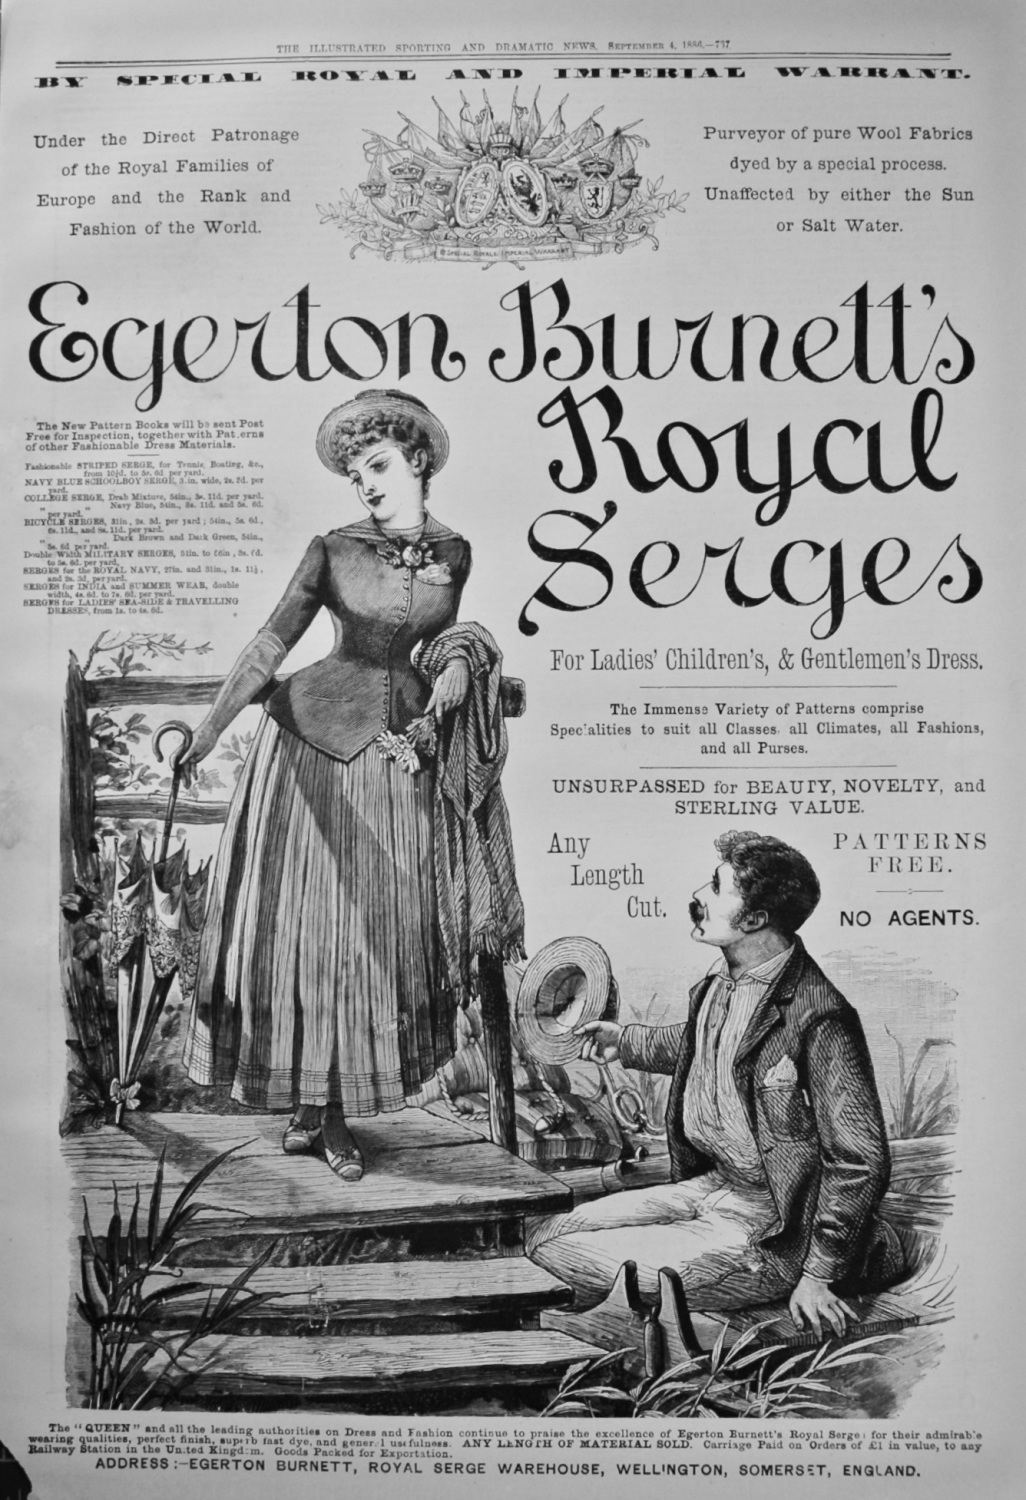 Egerton Burnett's Royal Serges. 1886.